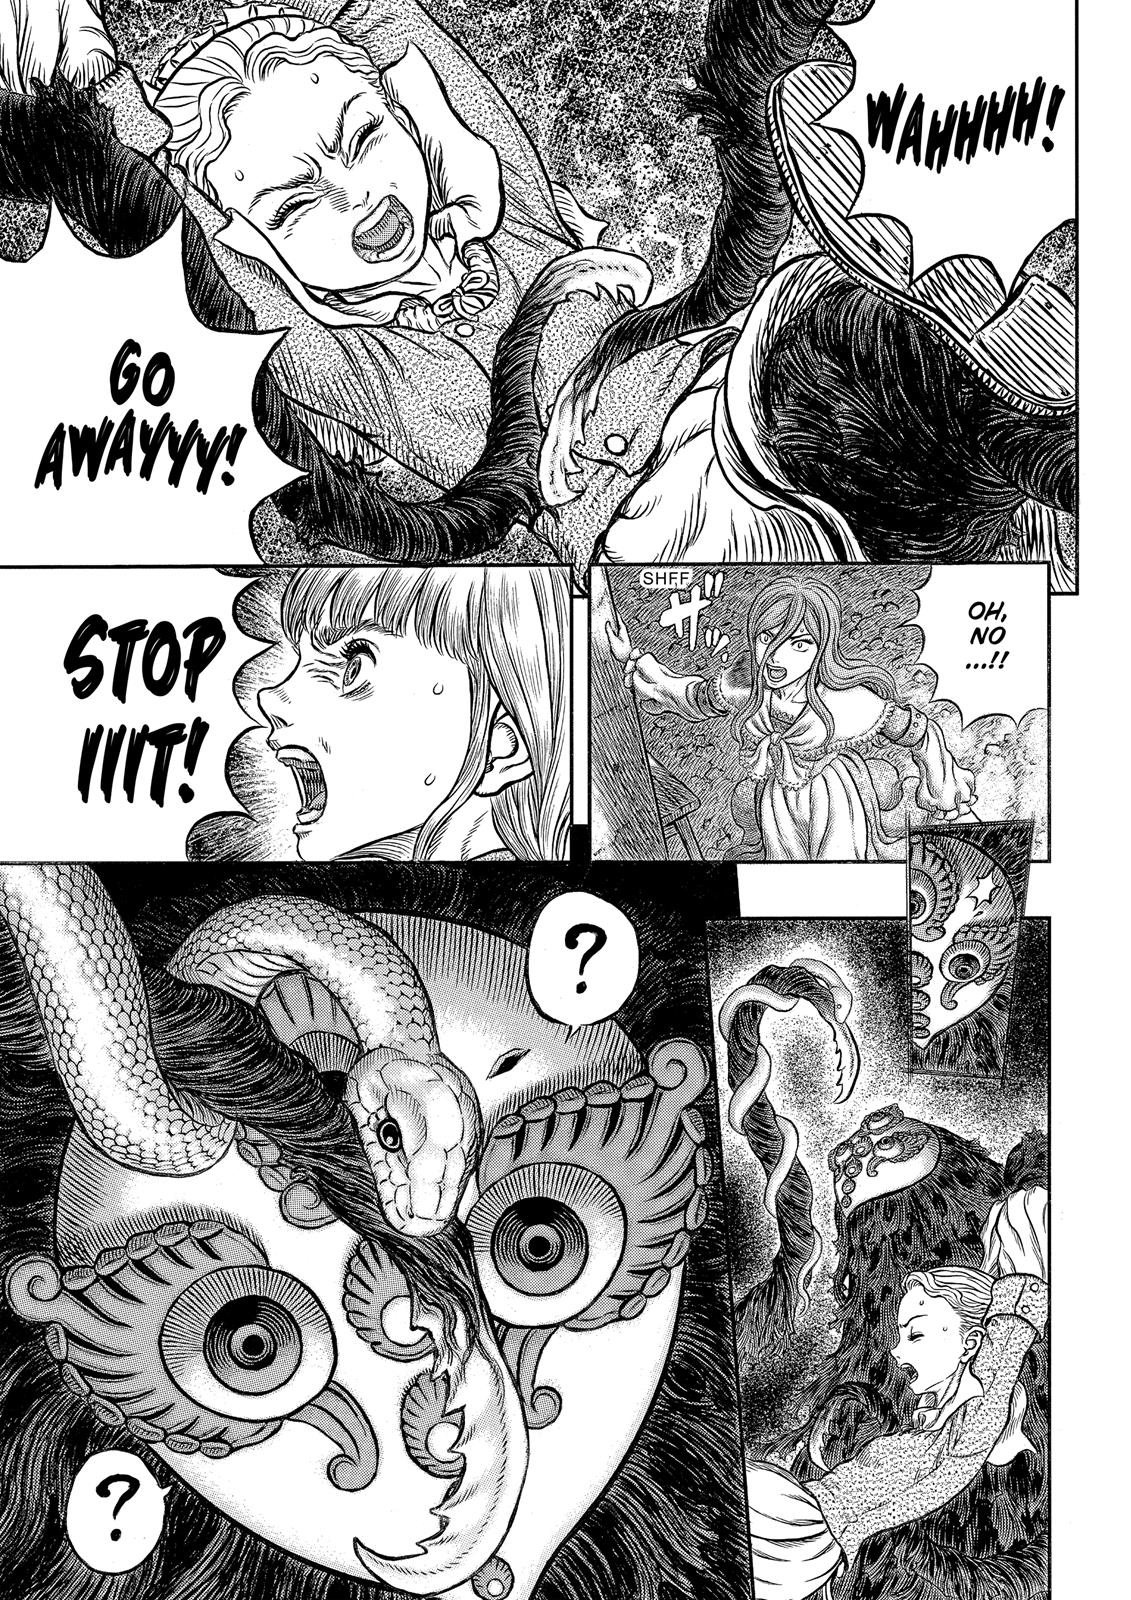 Berserk Manga Chapter 341 image 04